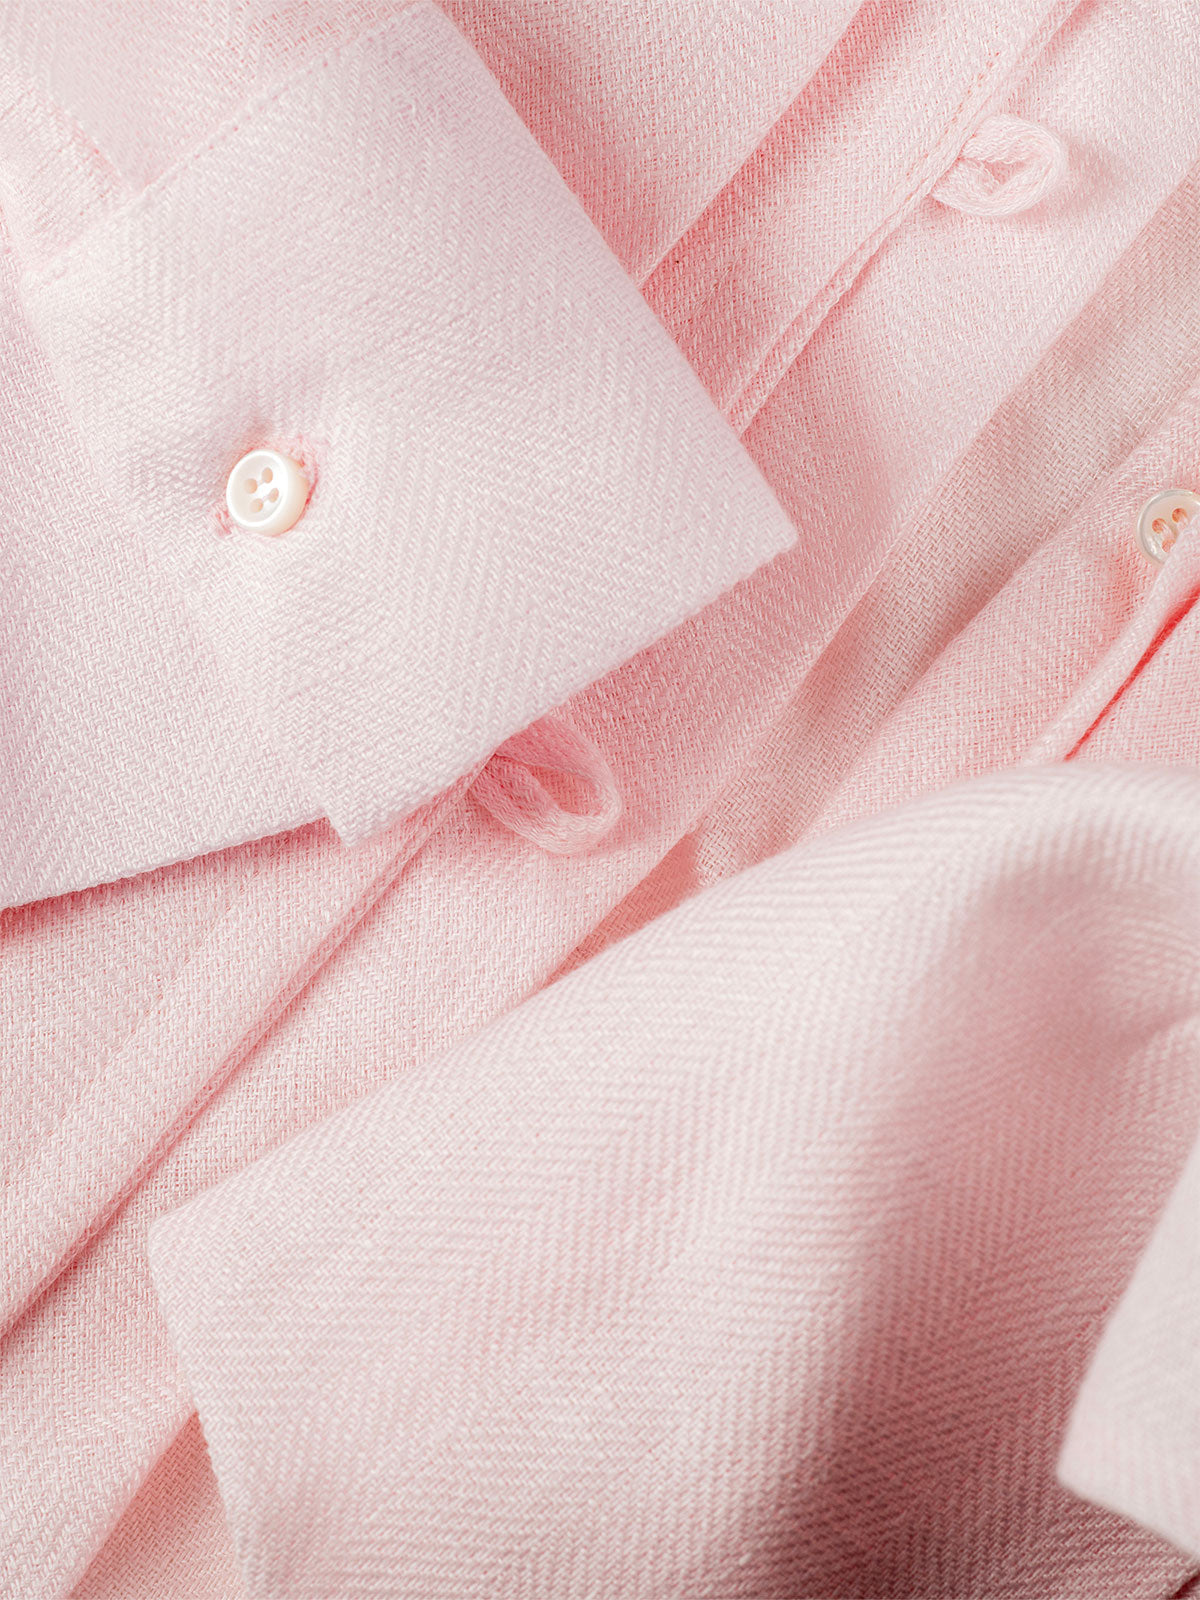 Camicia fiocco pink details 100% Capri